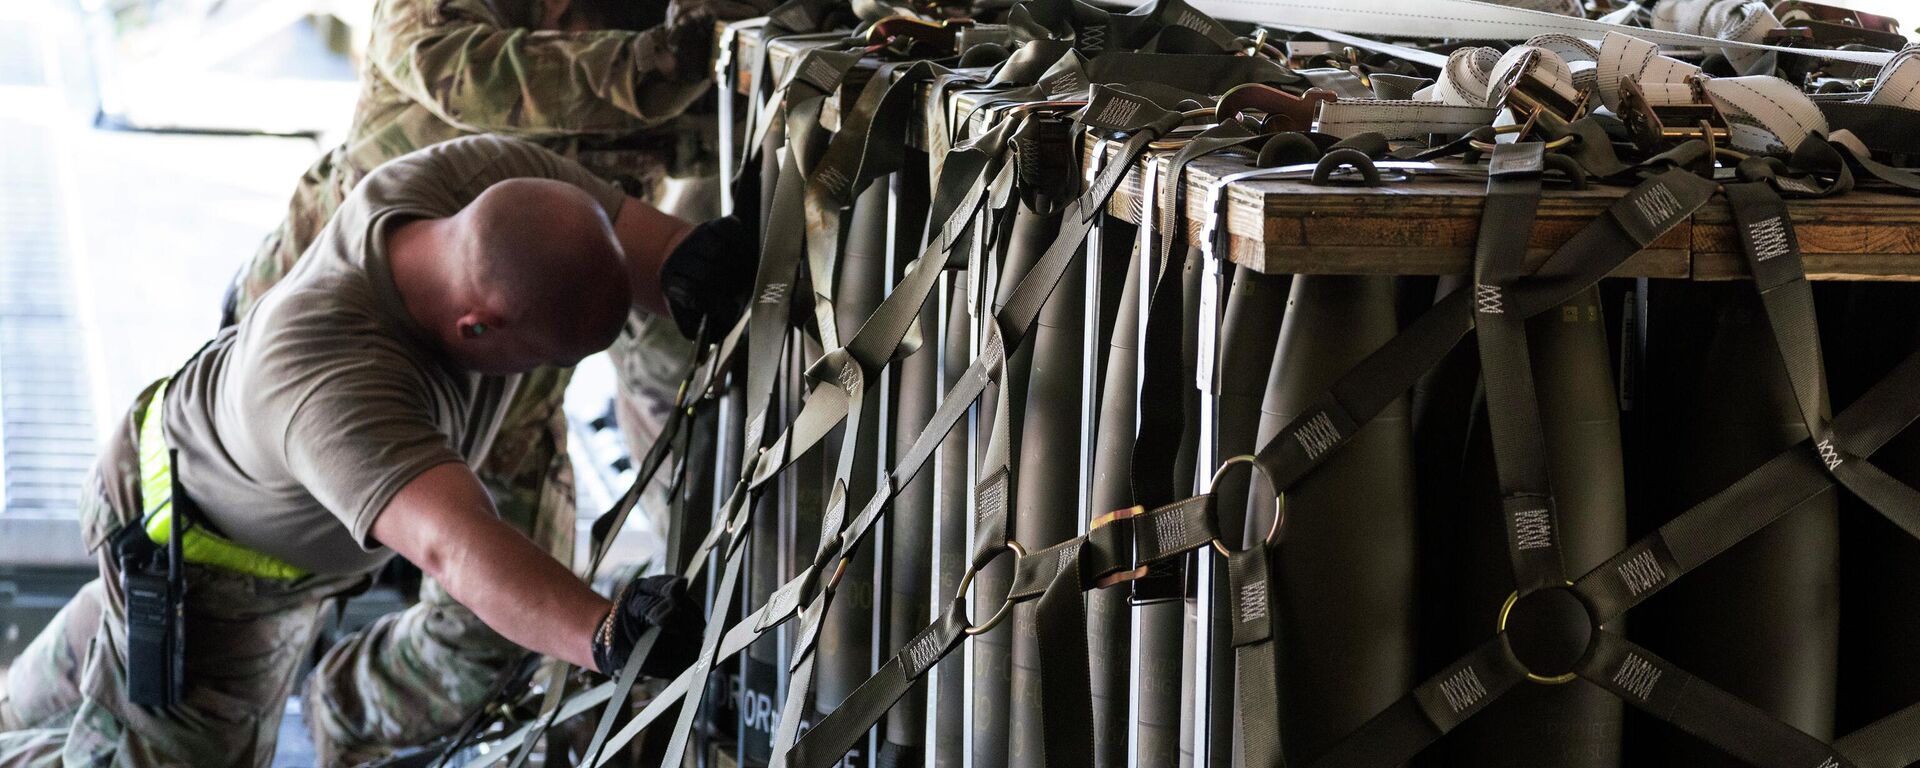 ドーバーの米空軍基地からウクライナへ輸送される武器弾薬の積み出し - Sputnik 日本, 1920, 14.05.2022